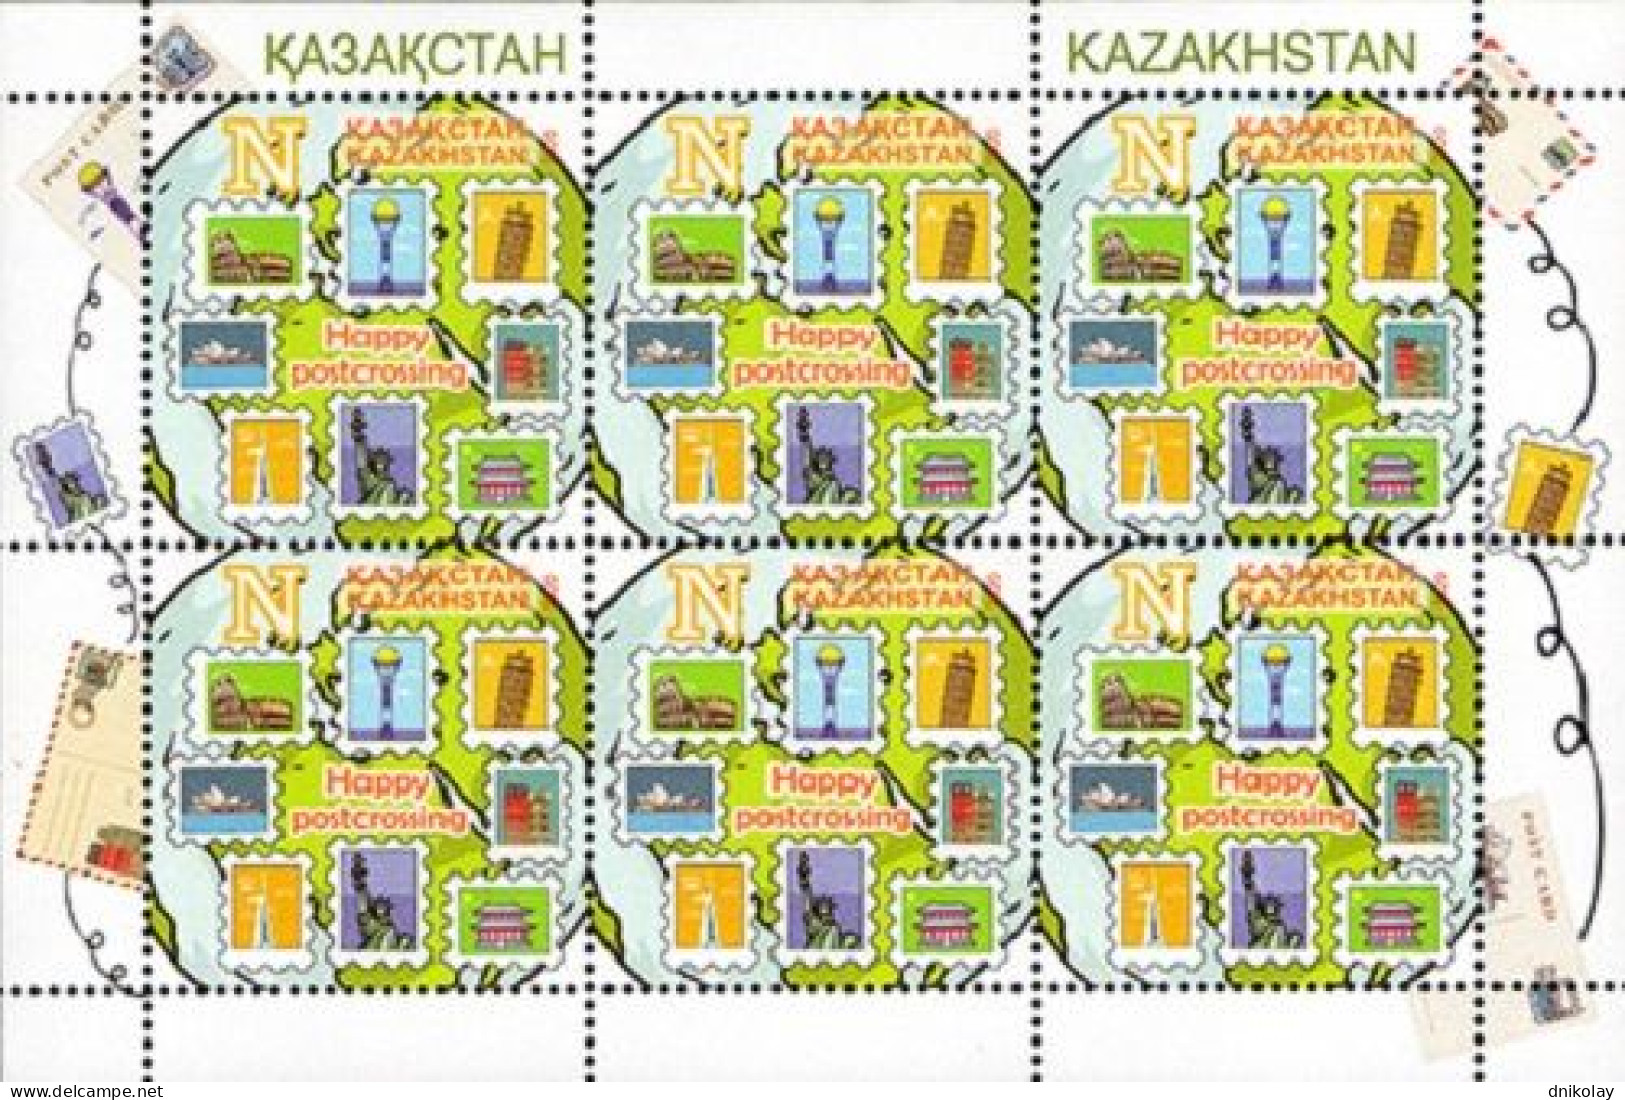 2020 1233 Kazakhstan Happy Postcrossing MNH - Kazakhstan